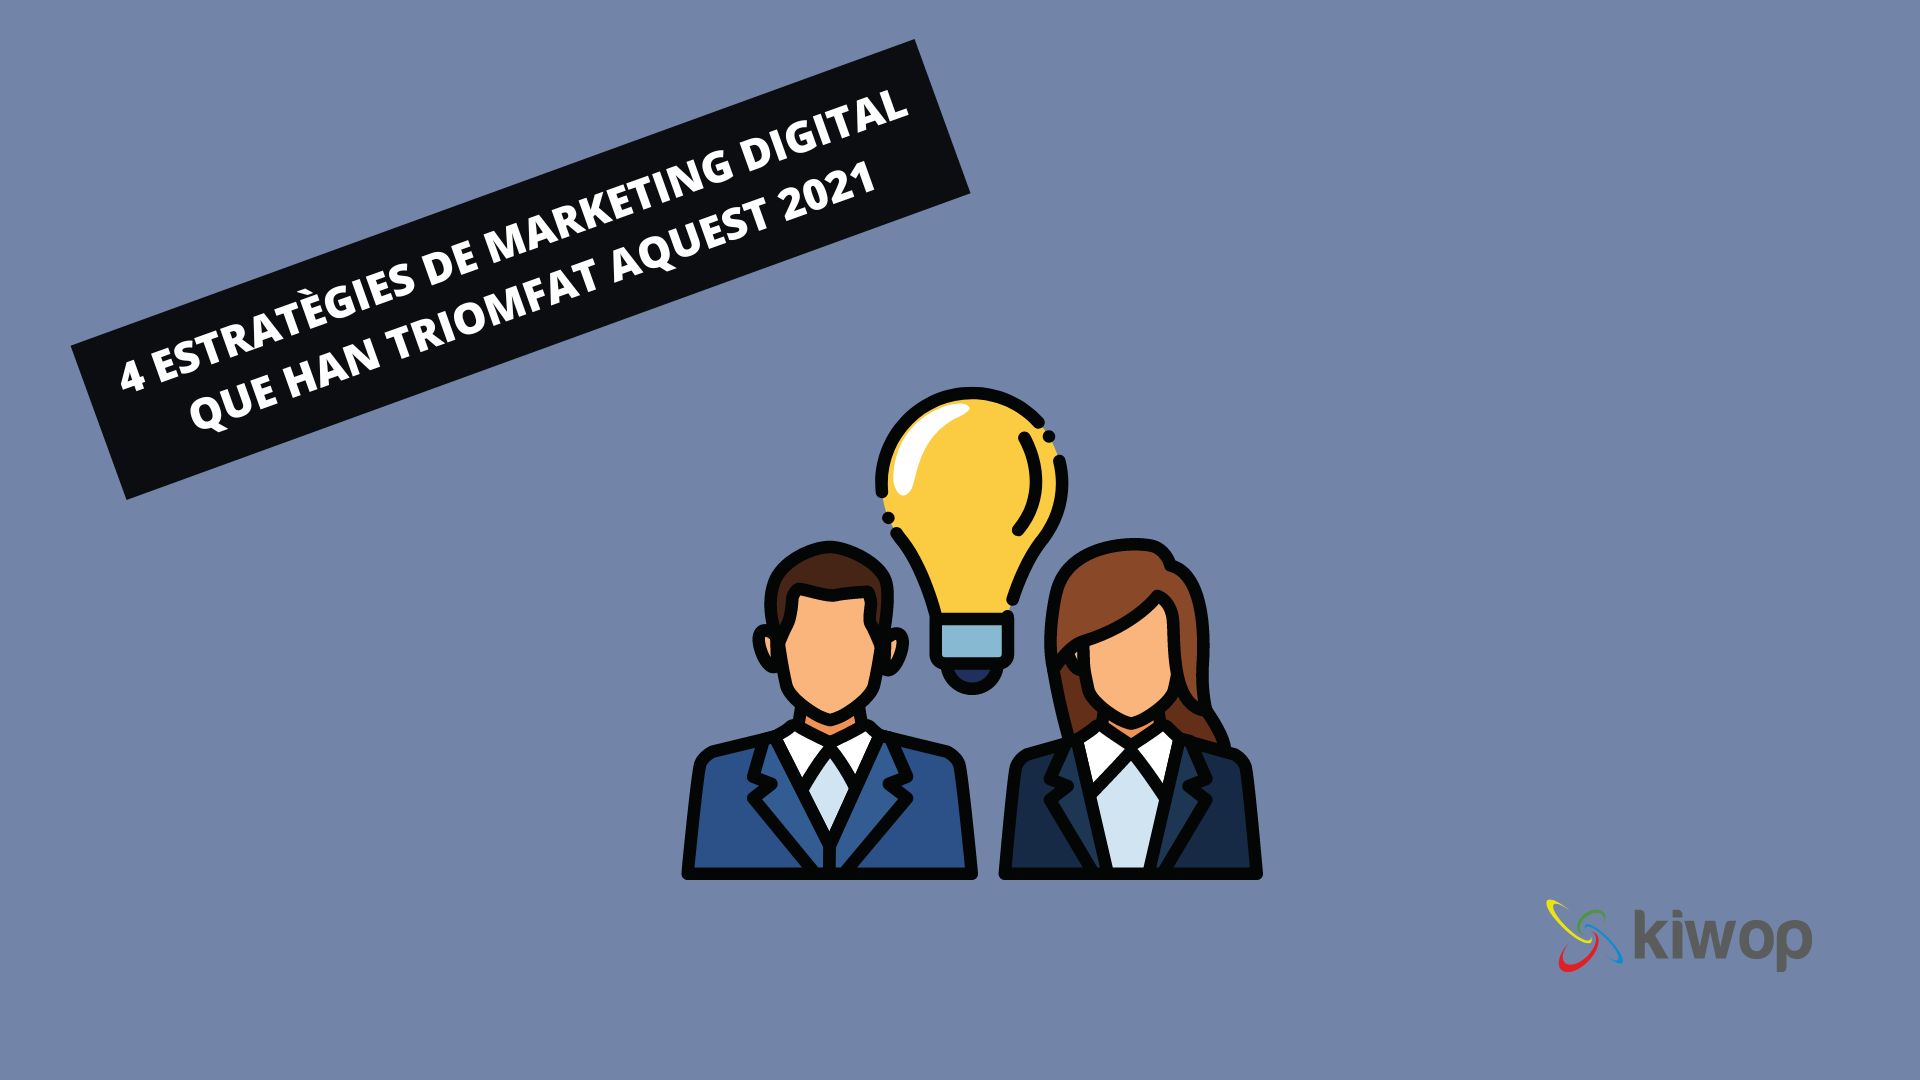 4 estratègies de marketing digital que han triomfat aquest 2021